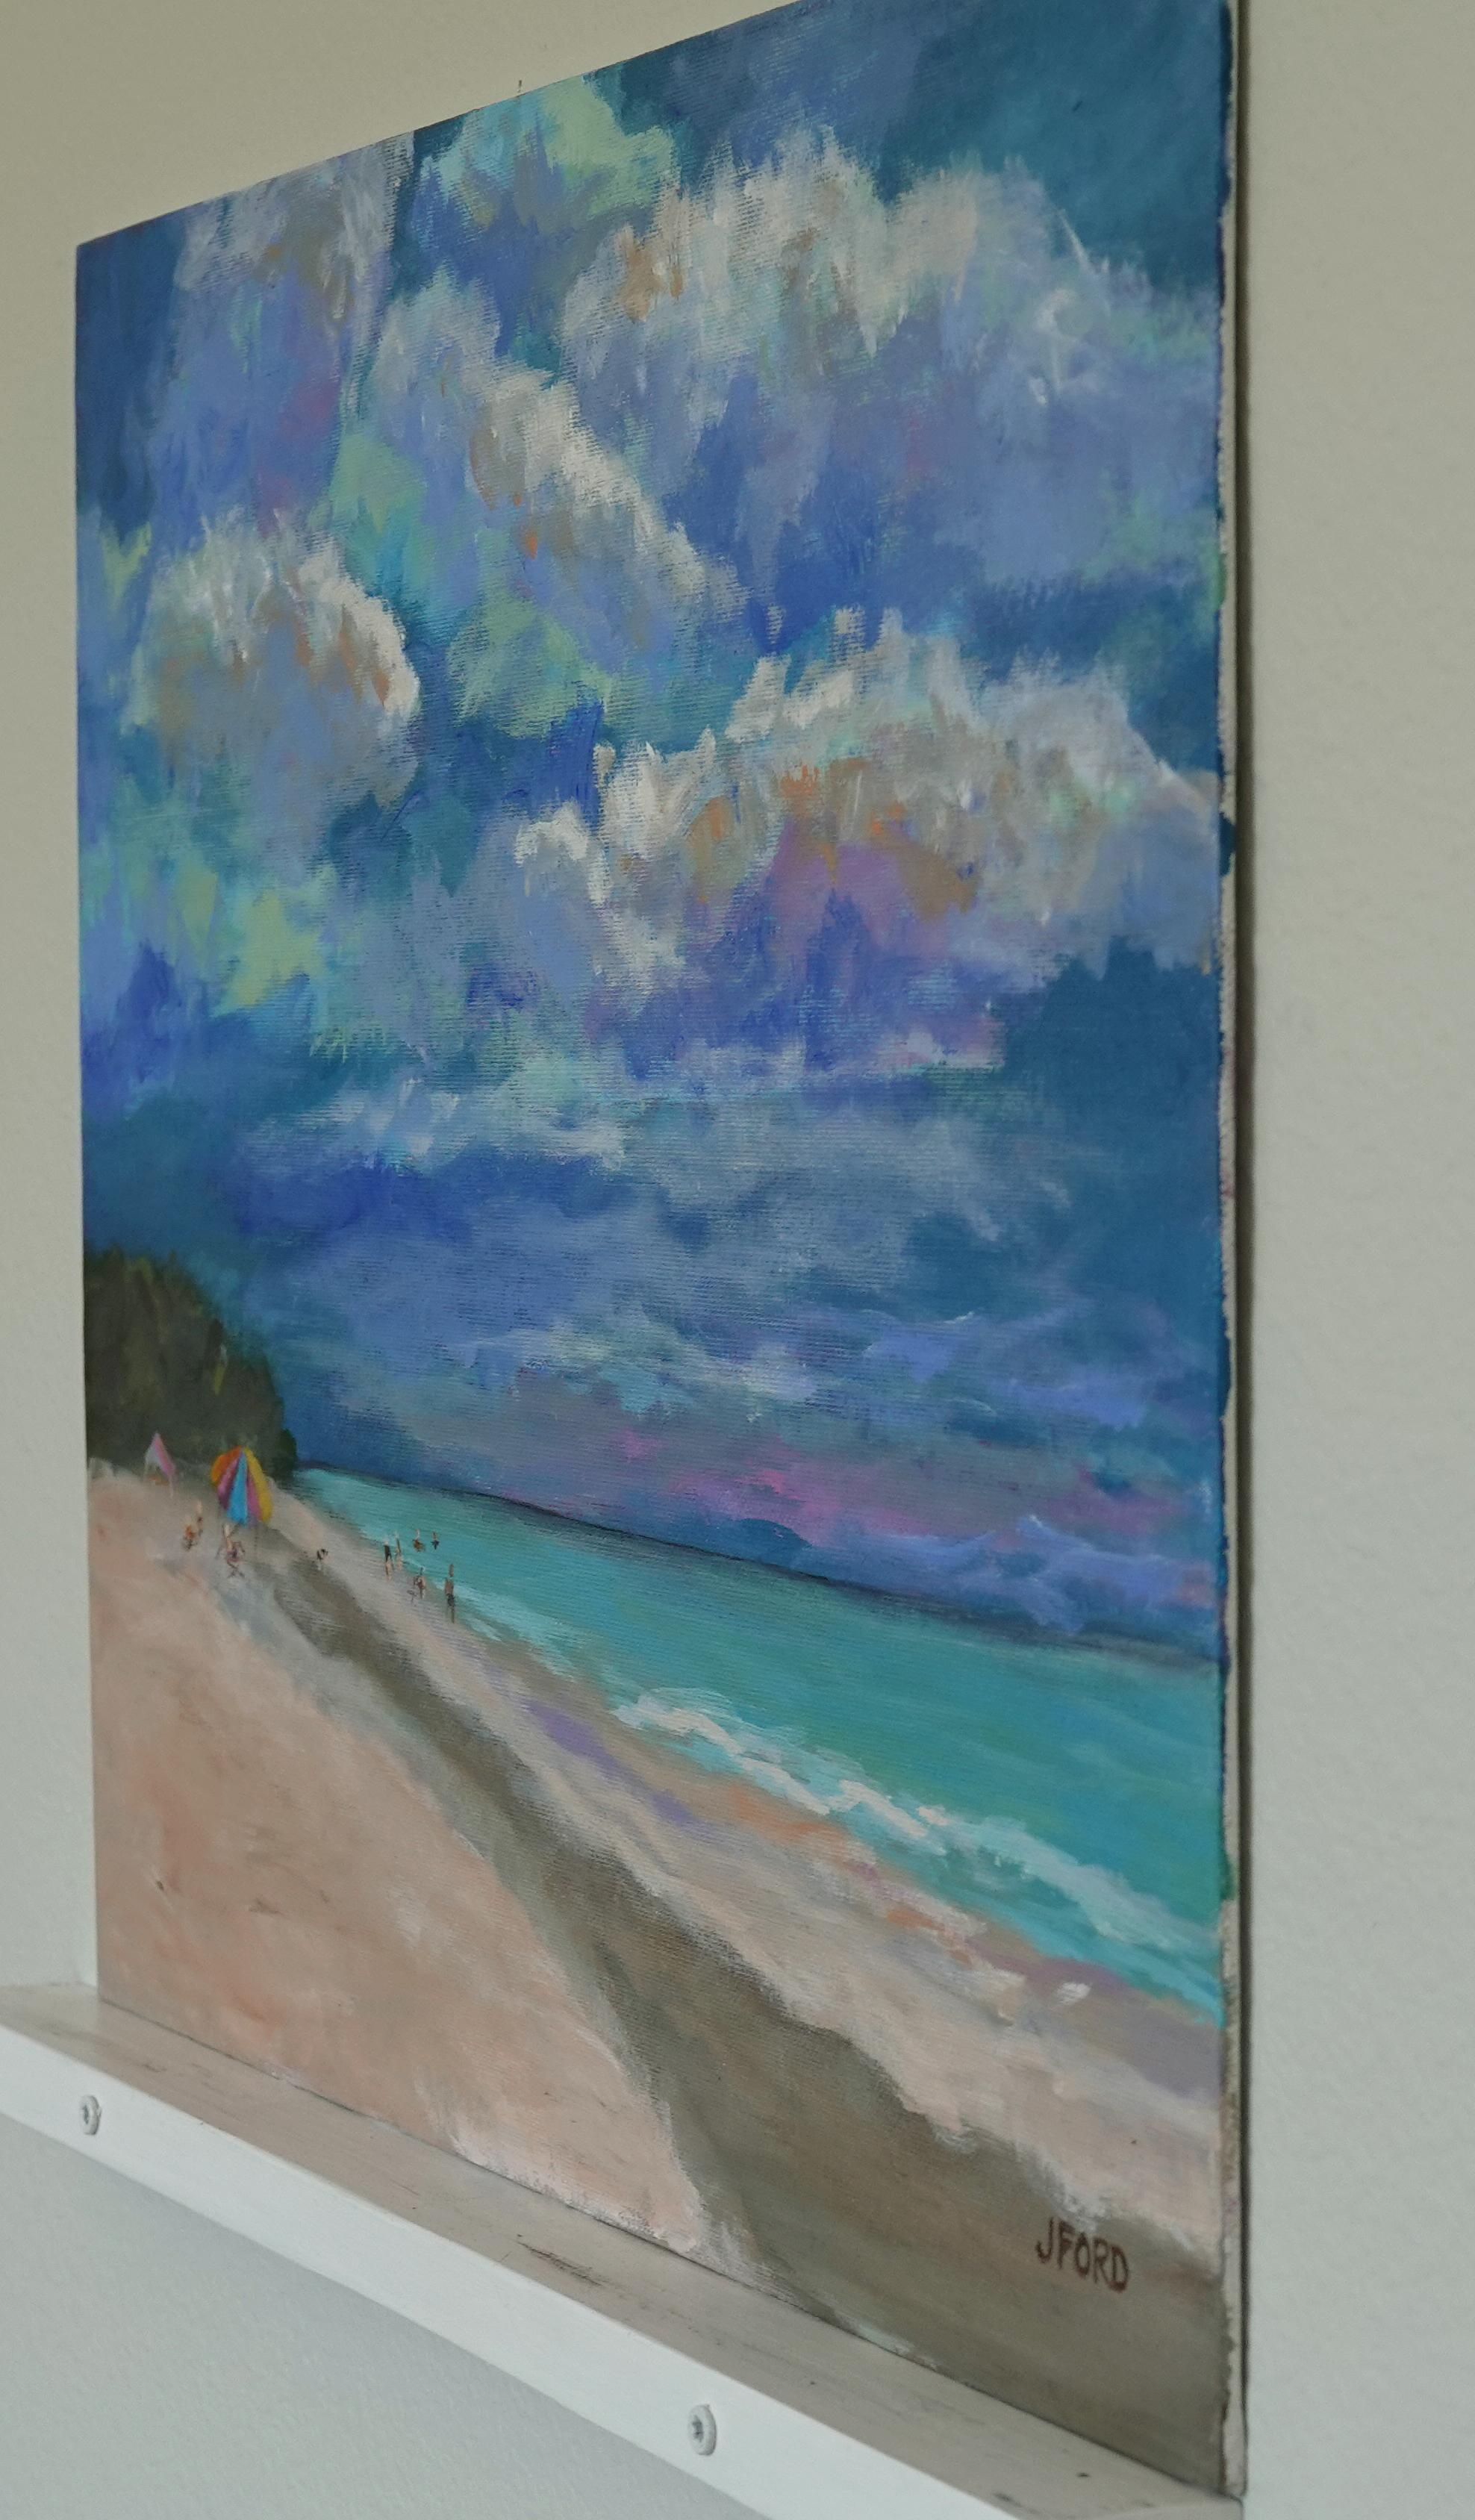 Sand chaud et beaux nuages, peinture d'origine - Painting de Joanie Ford